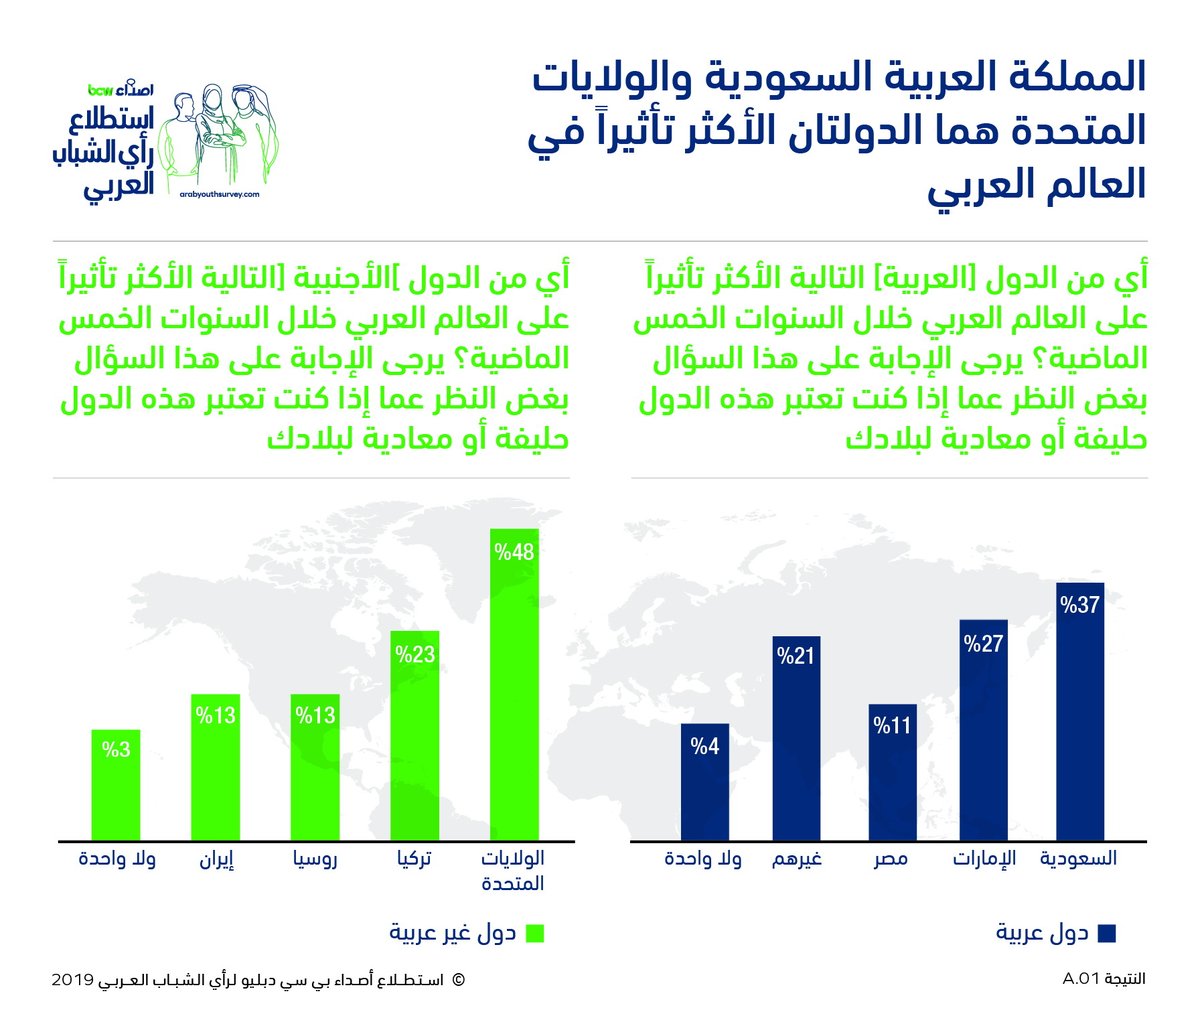 الأغلبية الساحقة من الشباب العربي تعتبر السعودية حليفا أقوى من